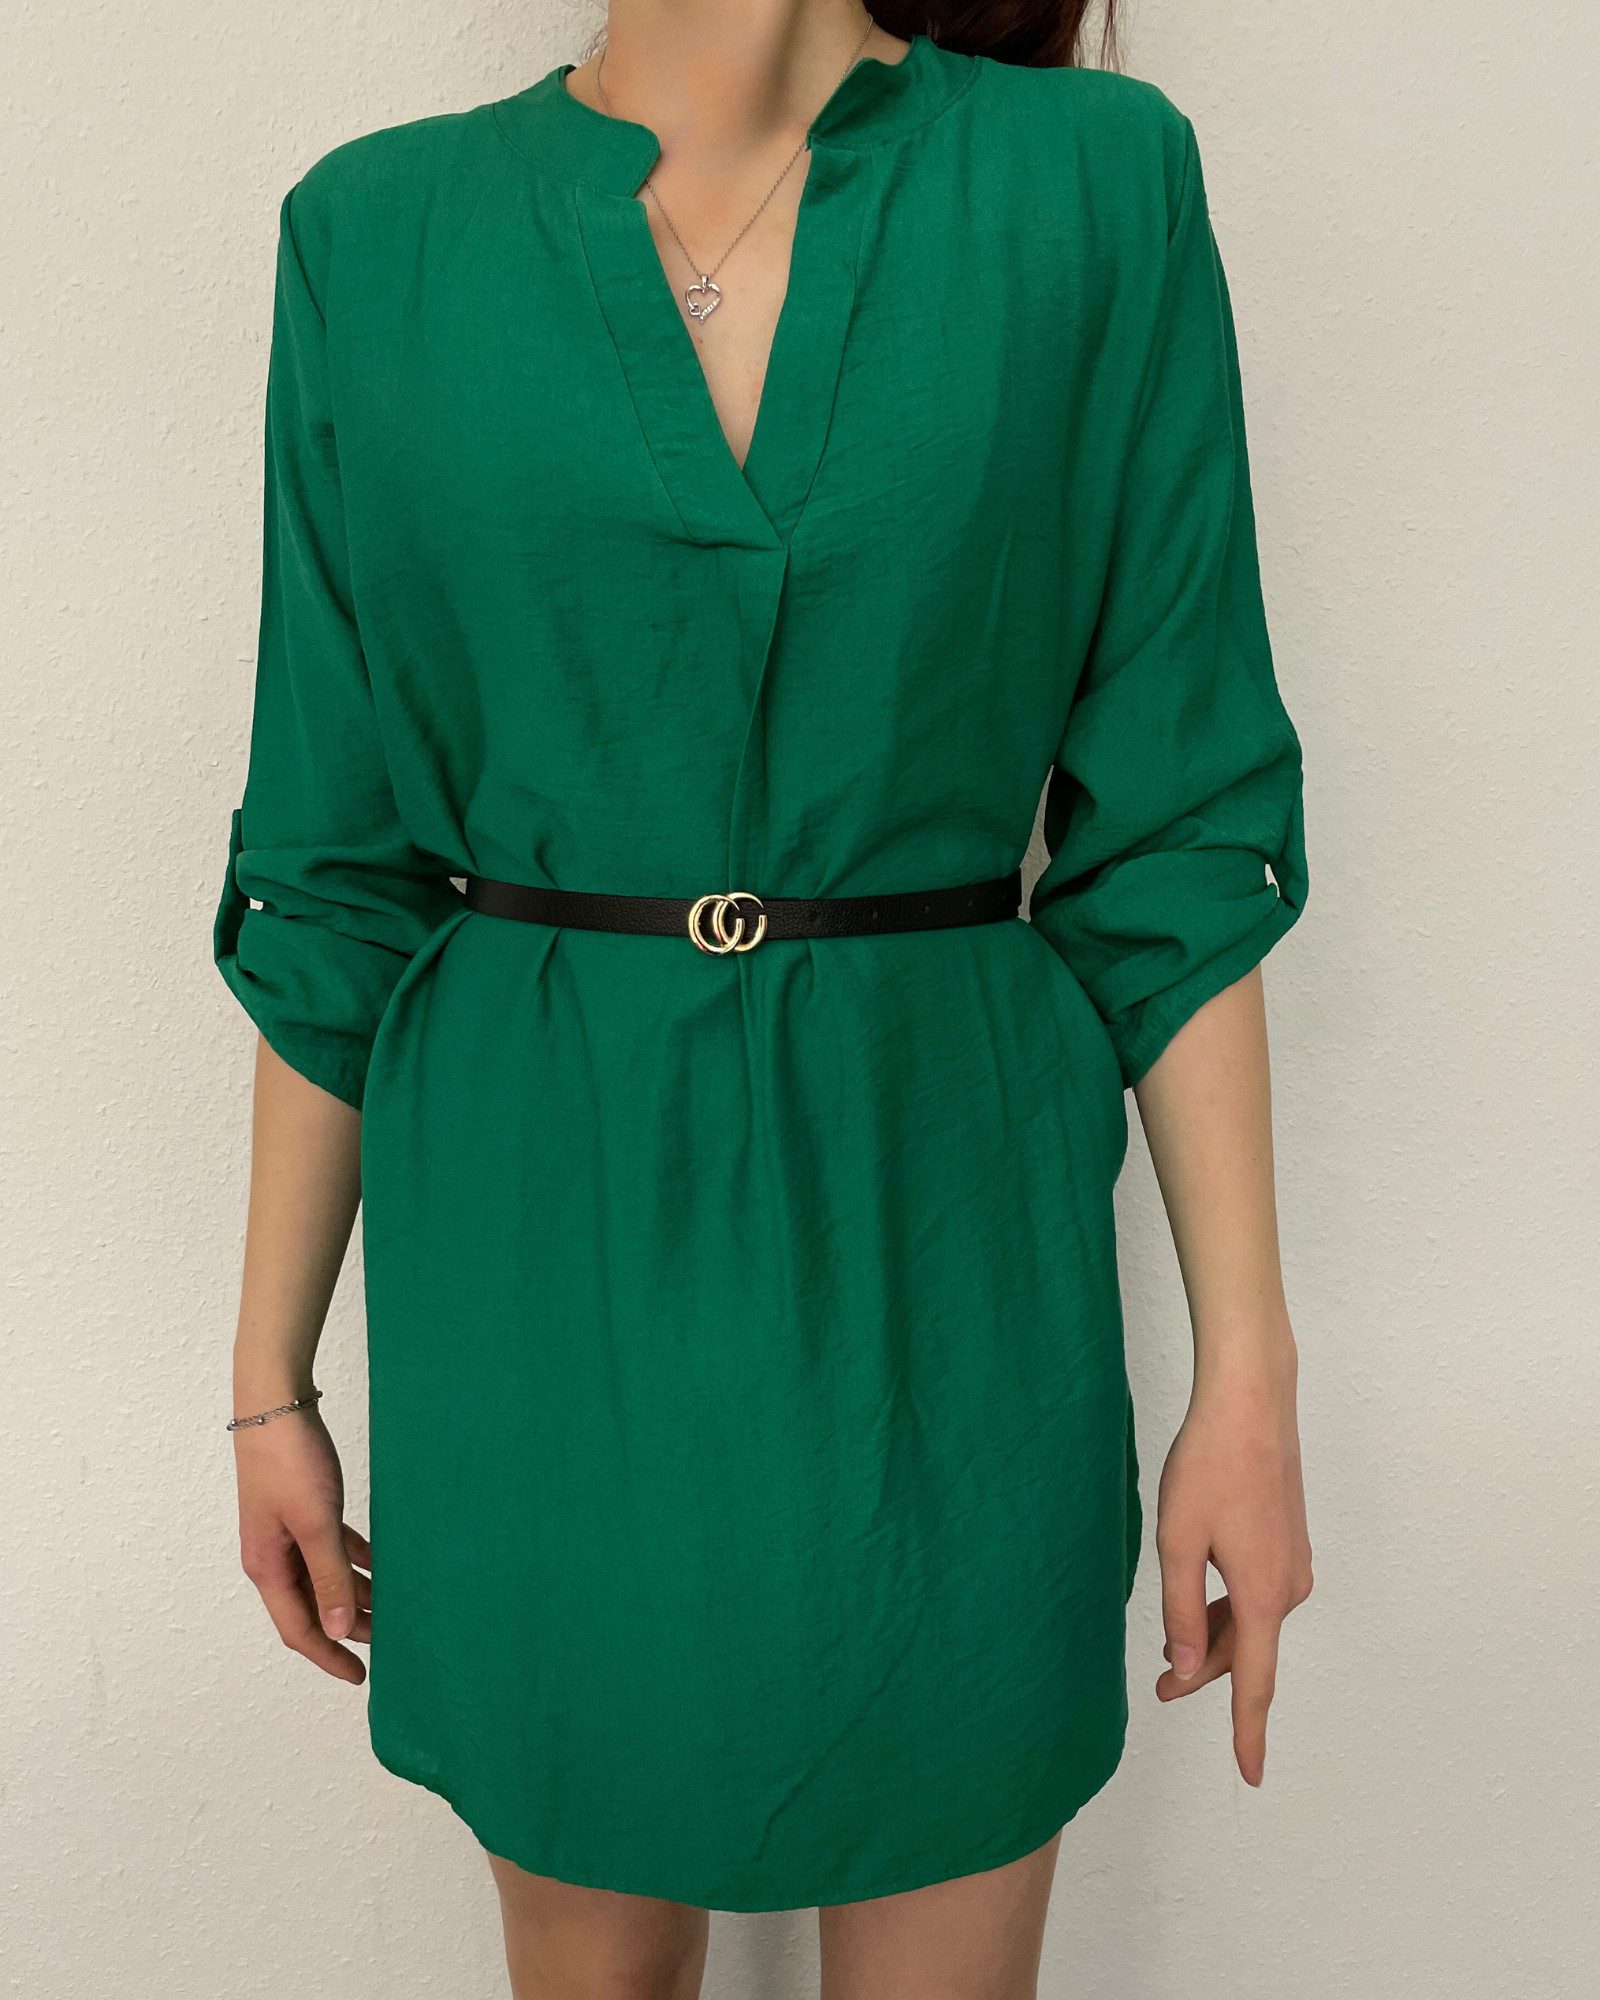 ITALY VIBES Tunikakleid - Kleid CARA - Blusenkleid mit Gürtelkleid - Mini-Kleid mit Gürtel - ONE SIZE passt hier Gr. XS-L